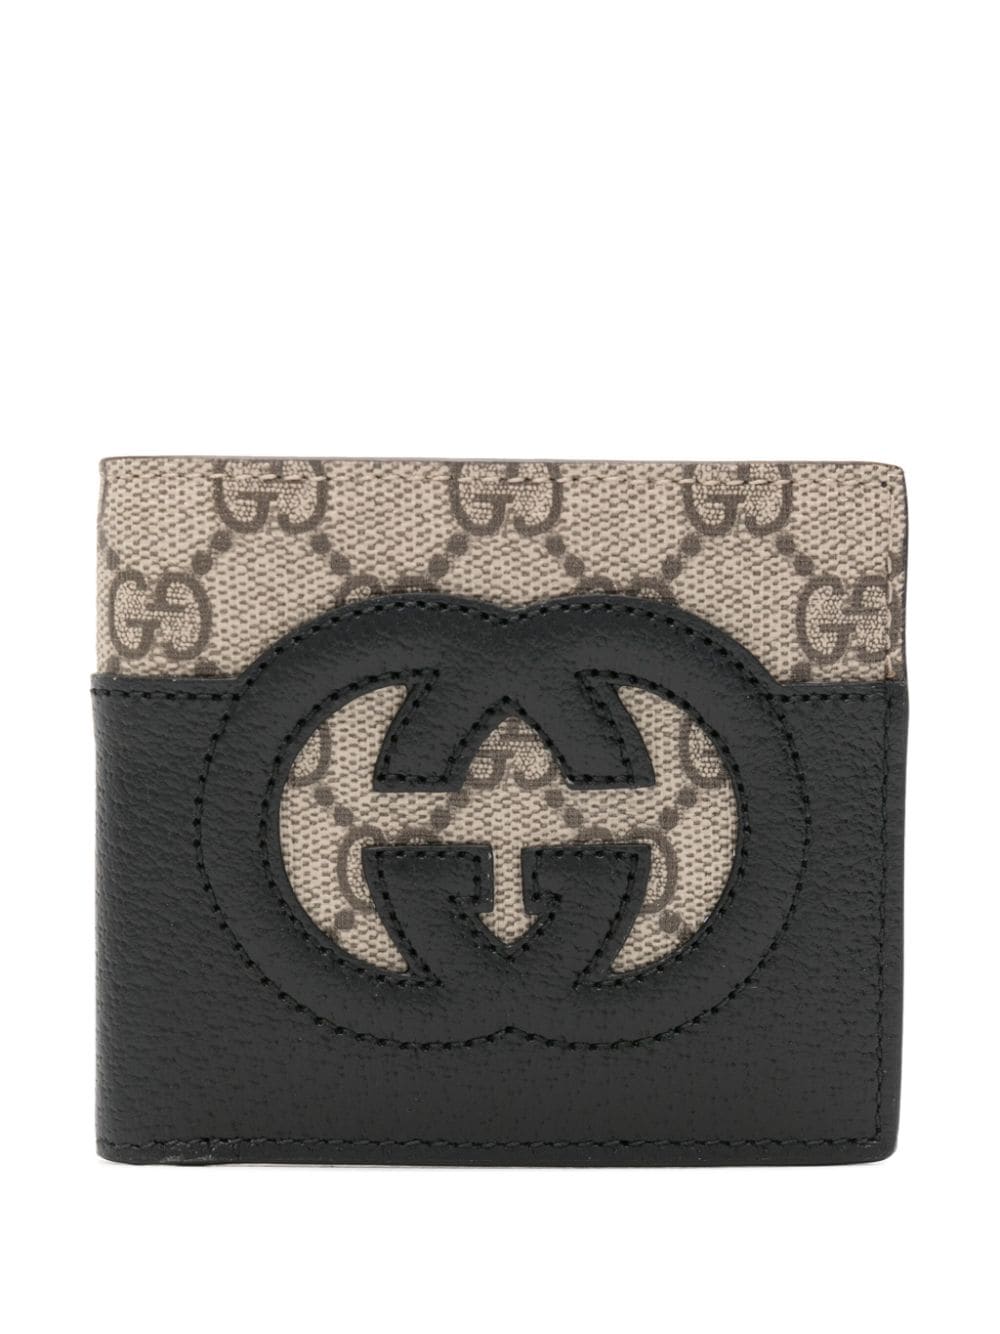 Gucci Interlocking G Cut-out Wallet In Schwarz